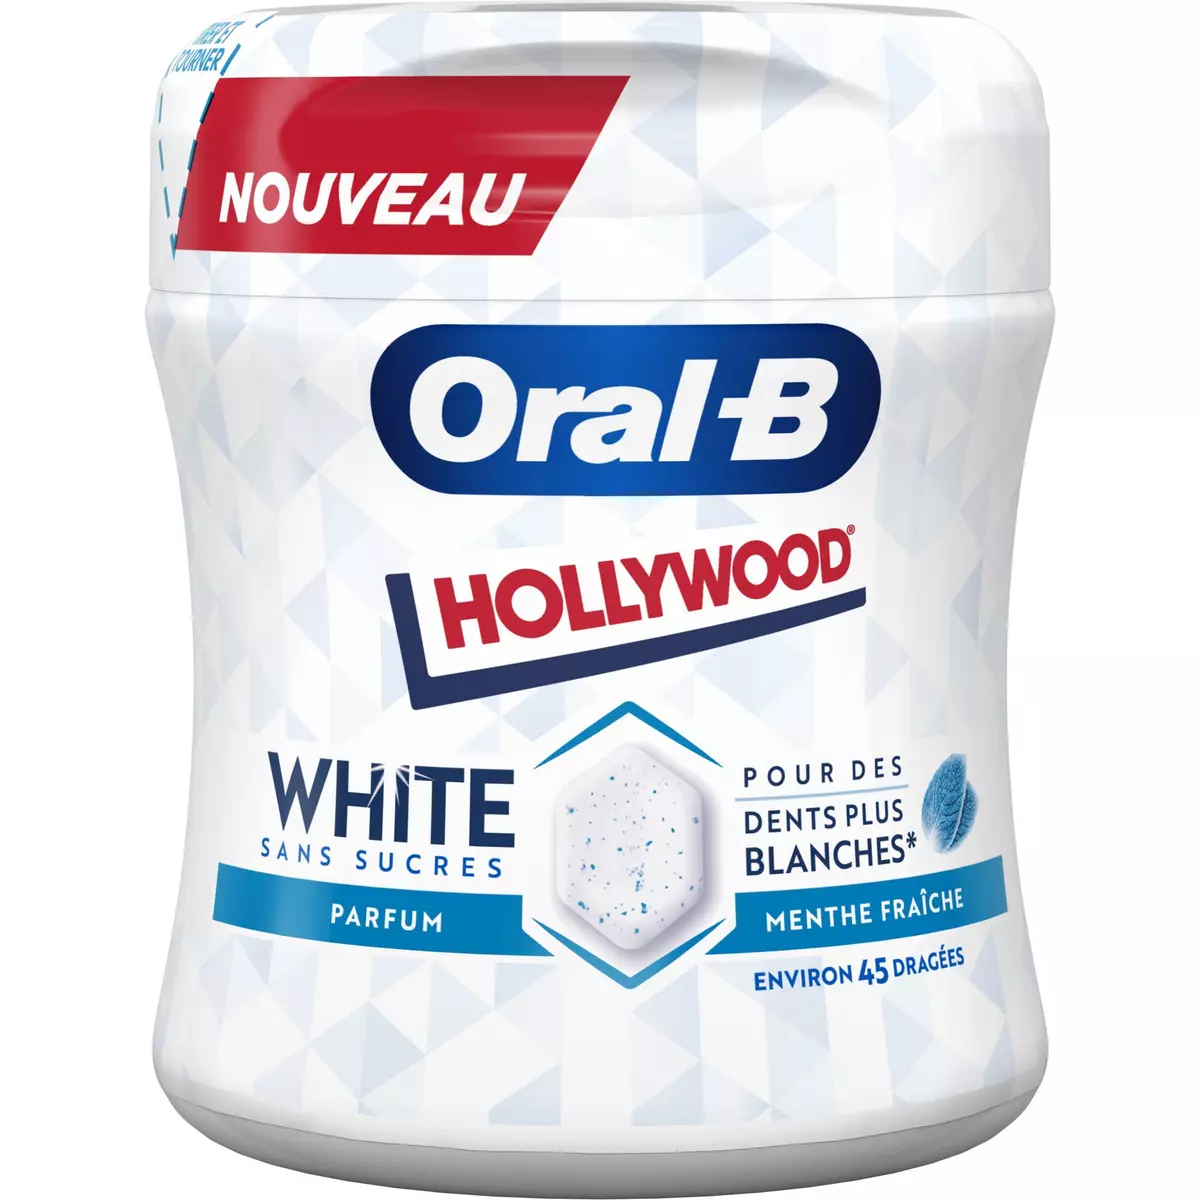 HOLLYWOOD Oral-B white chewing gum menthe fraîche sans sucres environ 45 dragées 76.5g